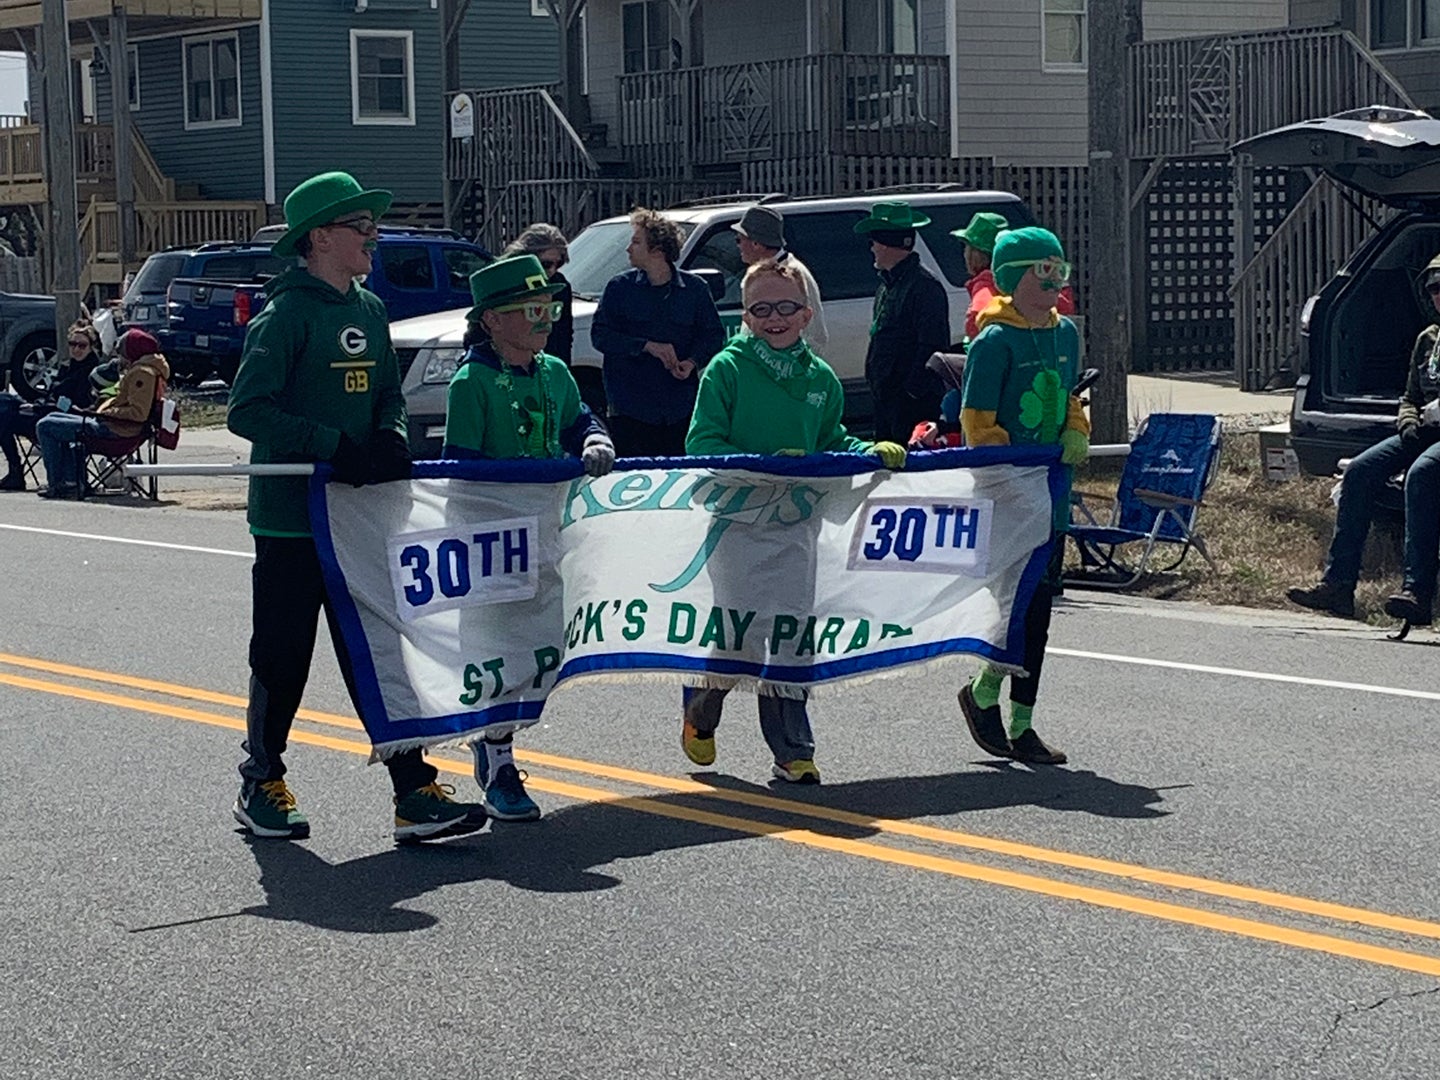 Kelly’s St. Patrick’s Day Parade